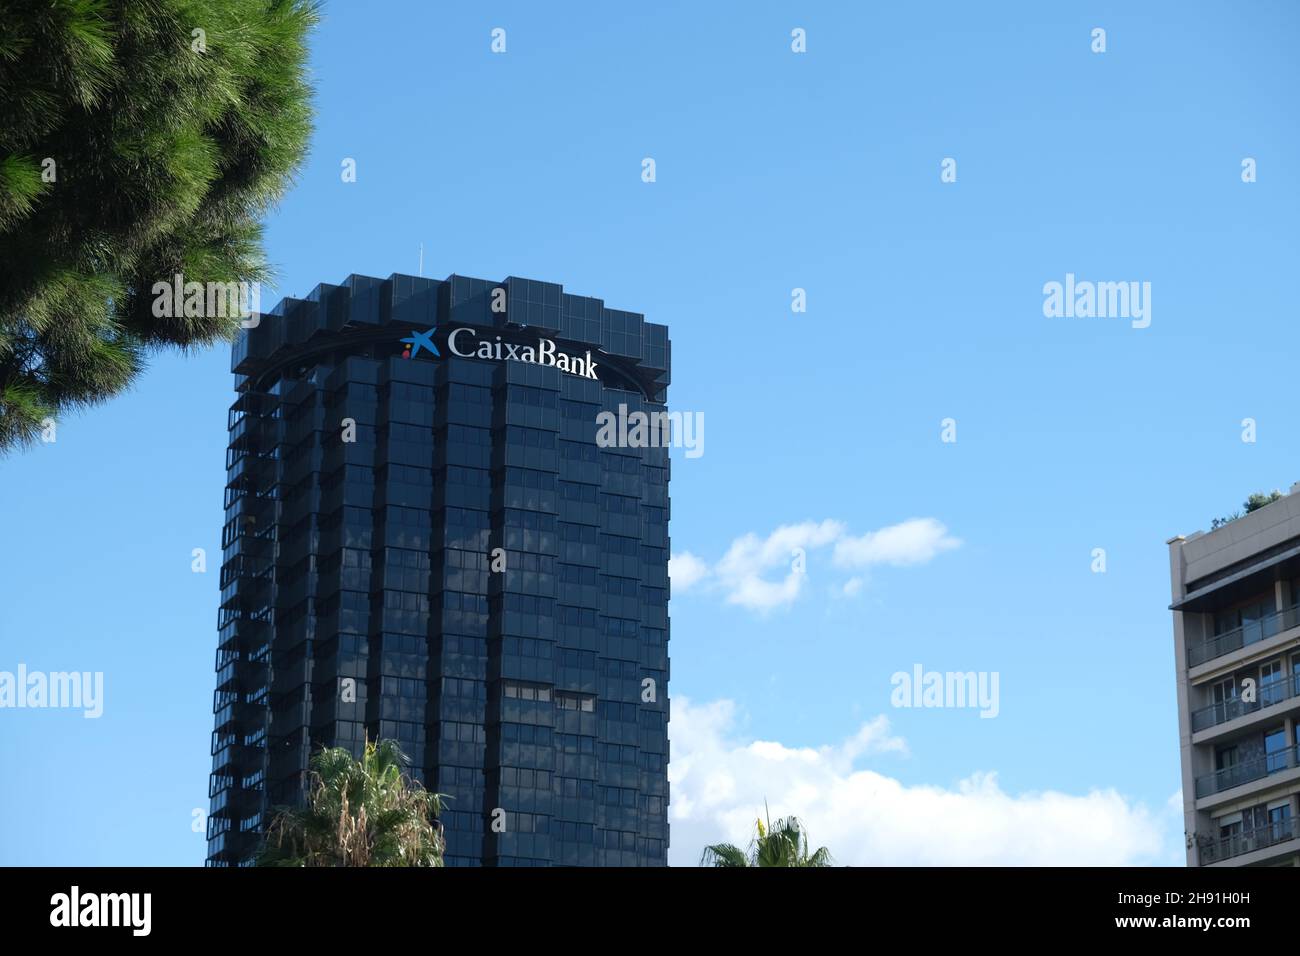 Barcelona, España - 5 de noviembre de 2021: Firma CaixaBank en el edificio, Editorial Ilustrativa. Foto de stock